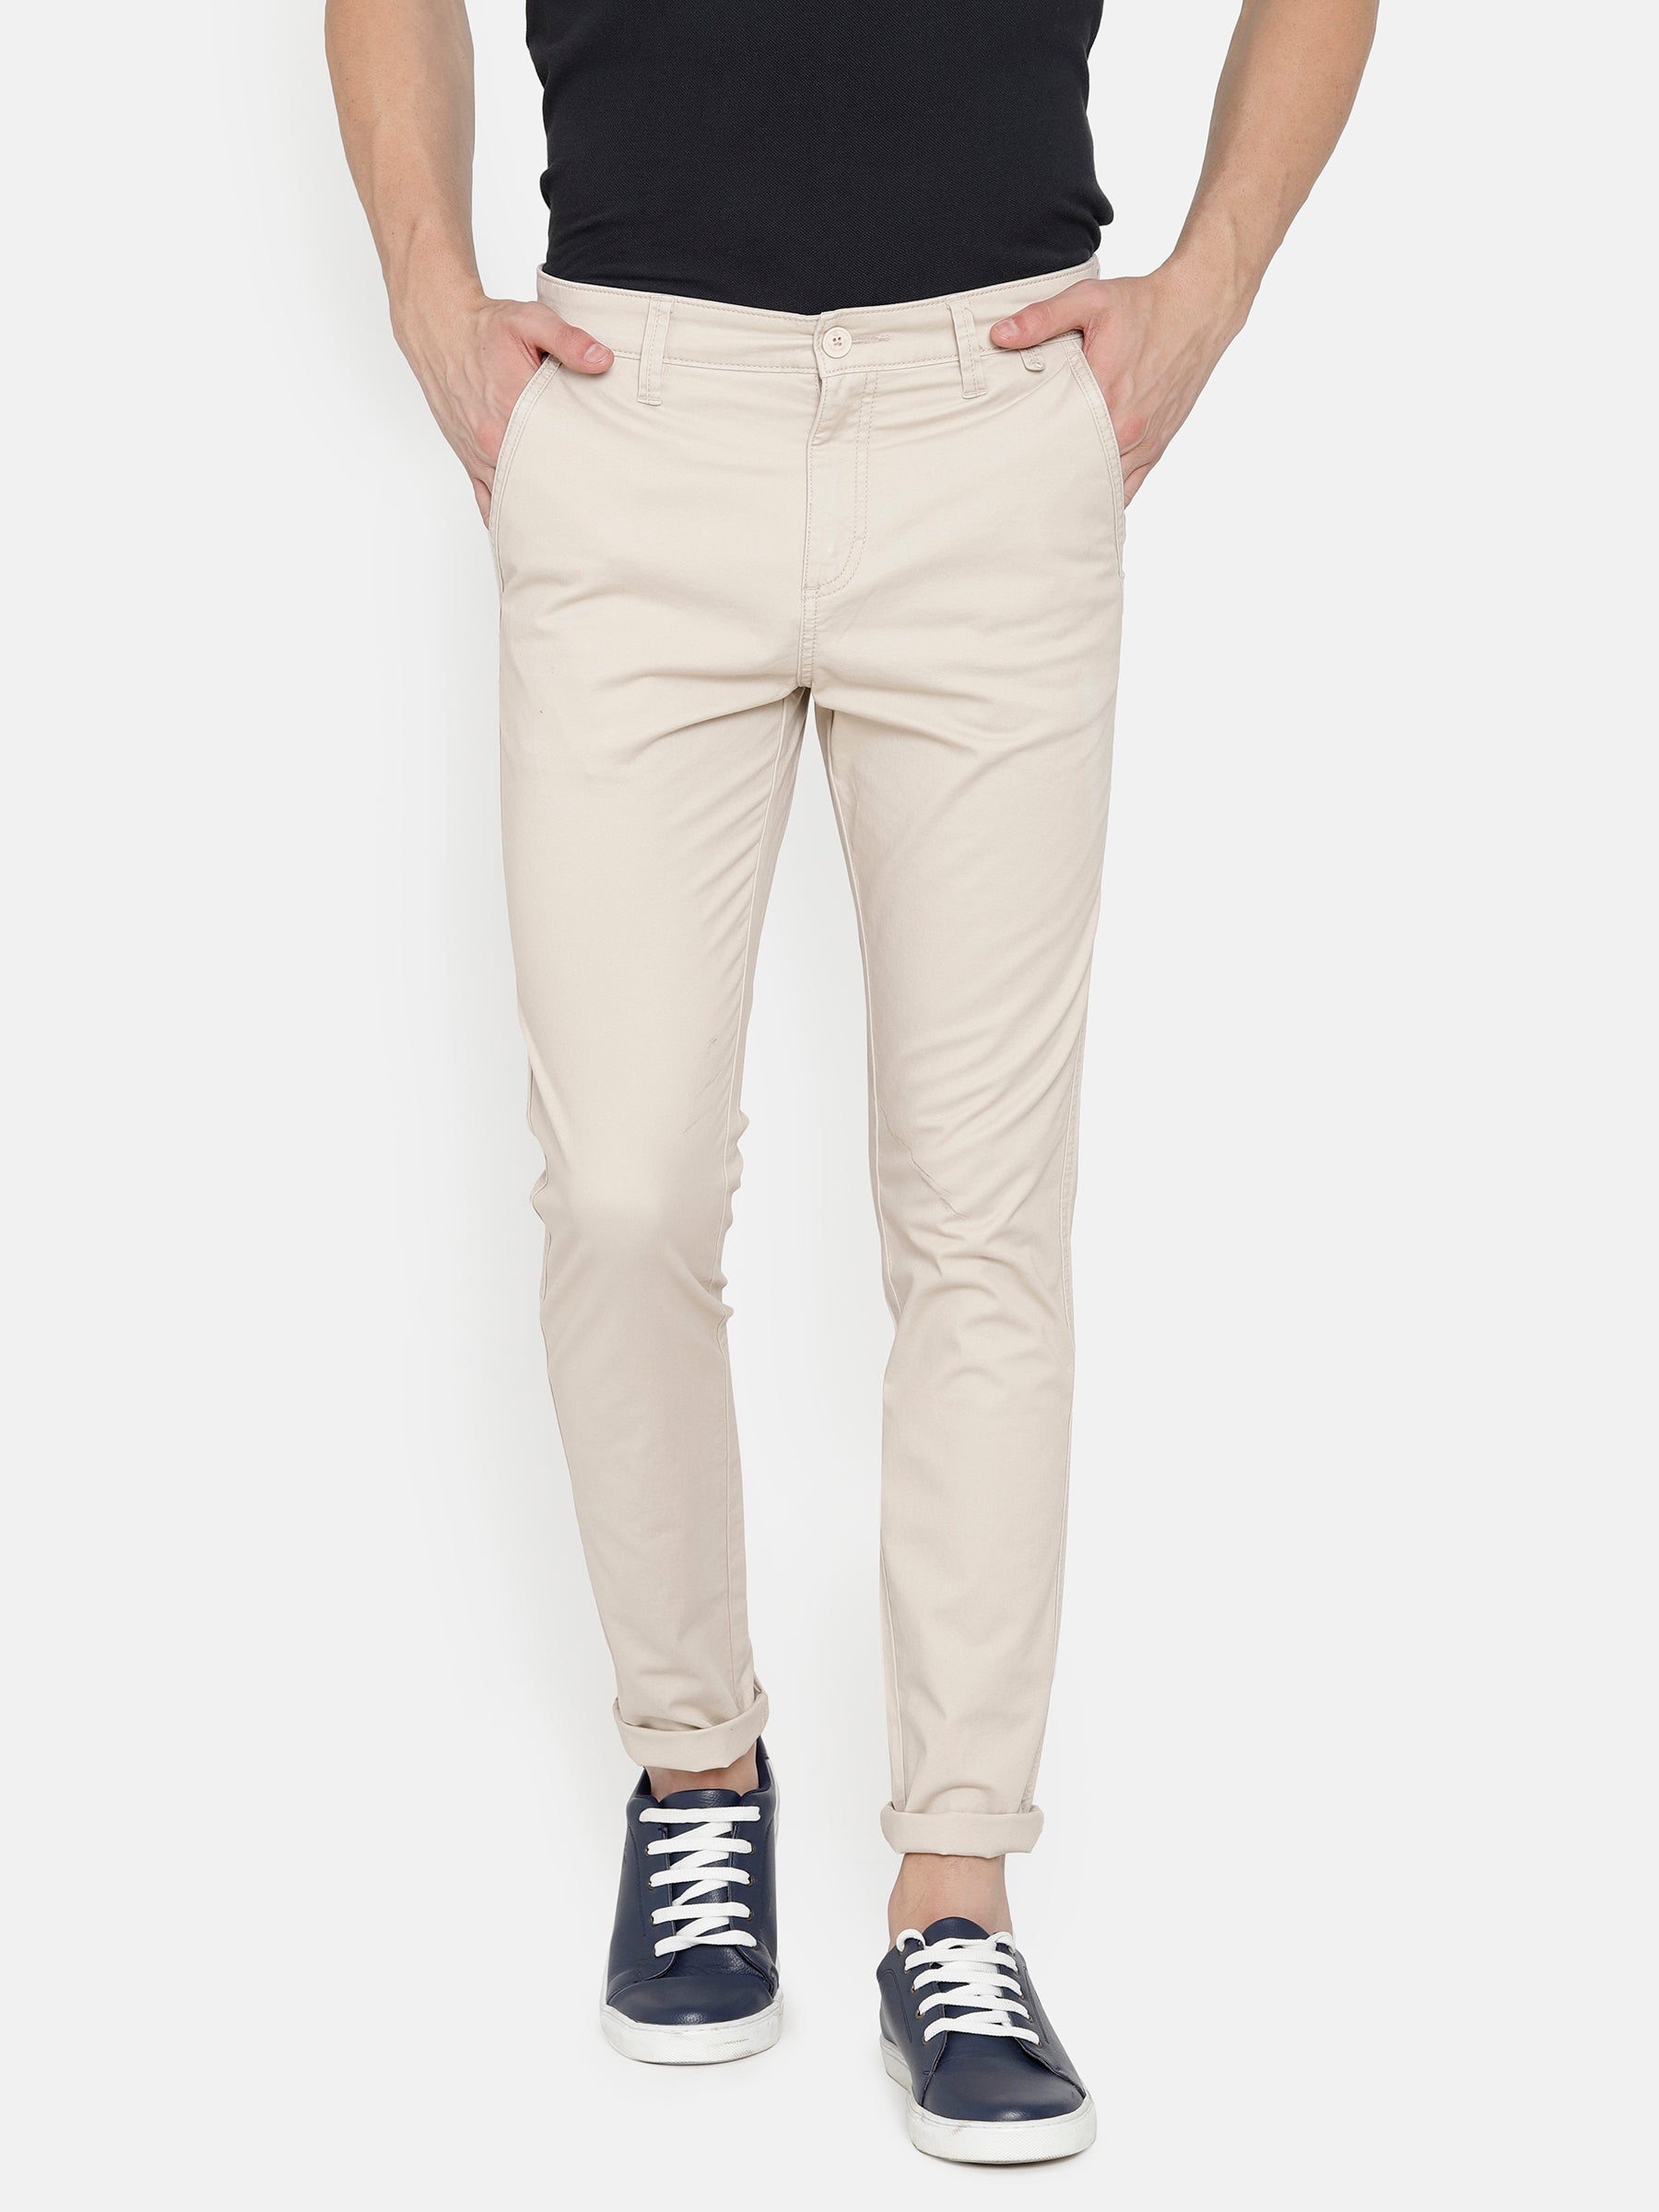 Cream Colour Travis Finch Black Casual Pant For Men Trouser  Strech  Cotton Pant Size 36  BjackCollections